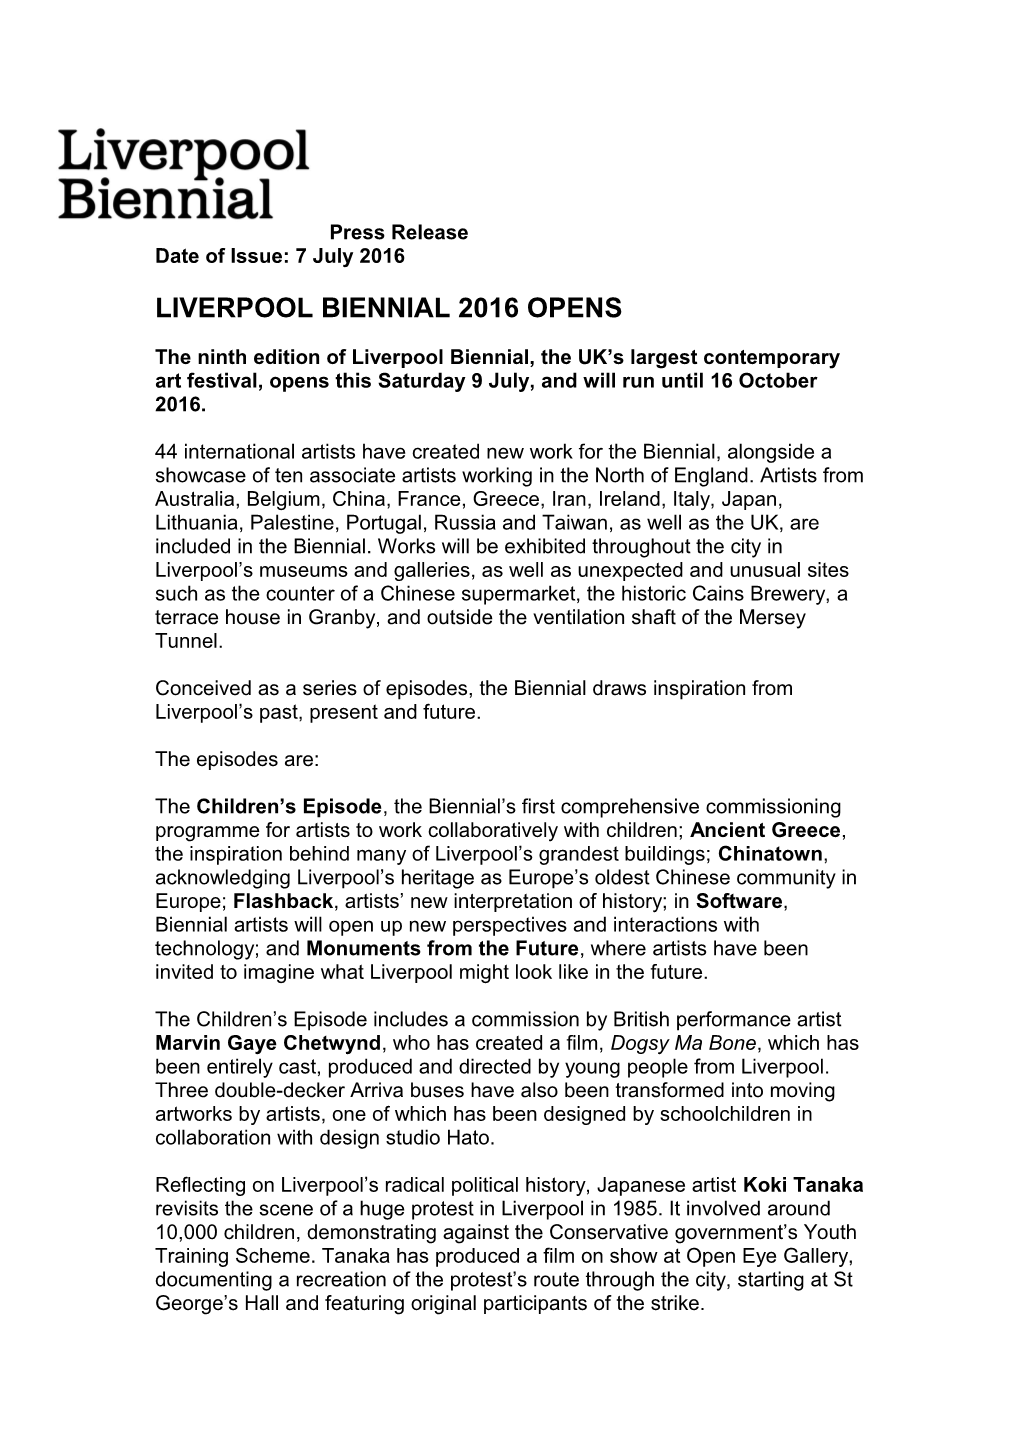 Liverpool Biennial 2016 Opens